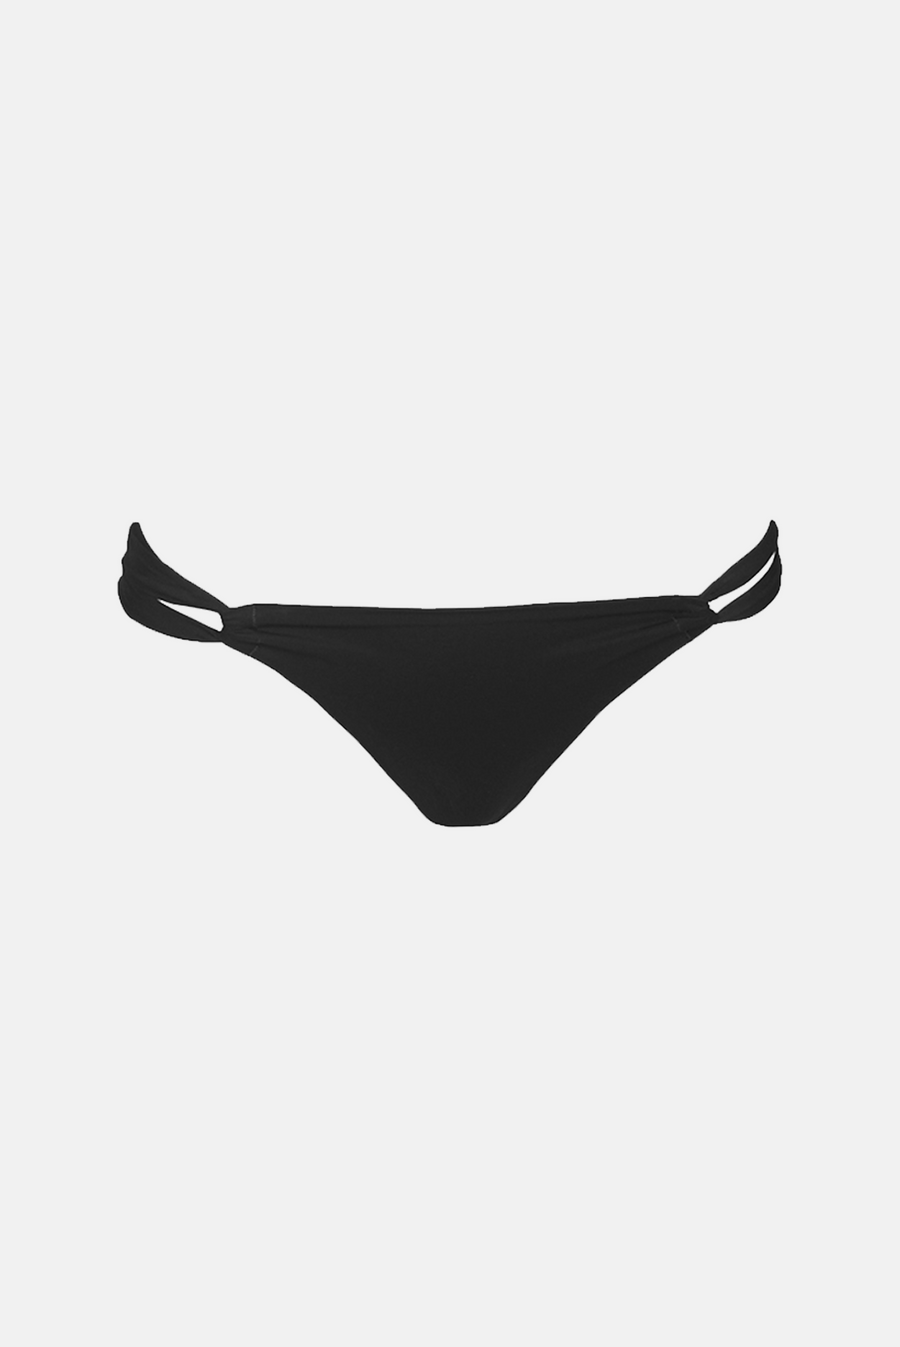 Sara Cristina - Narcisccus Bikini Bottom - Black